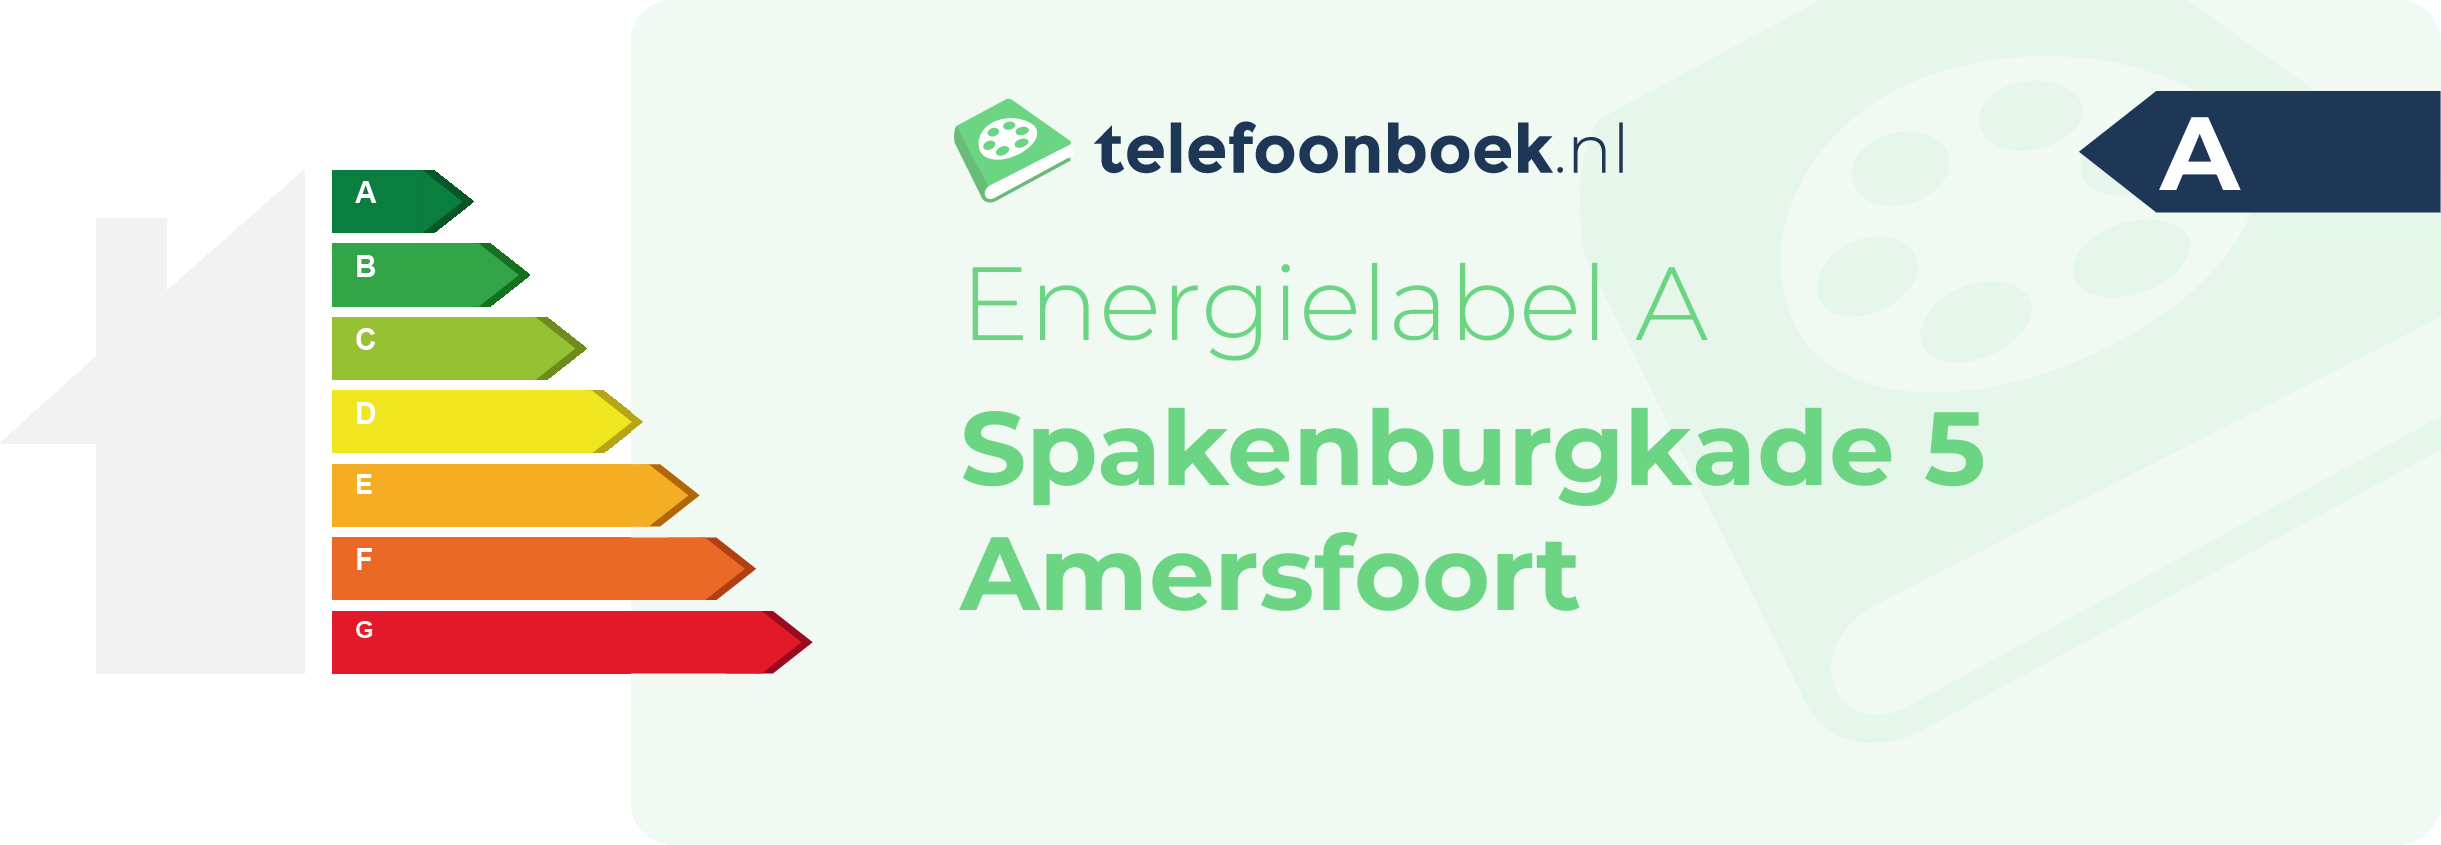 Energielabel Spakenburgkade 5 Amersfoort